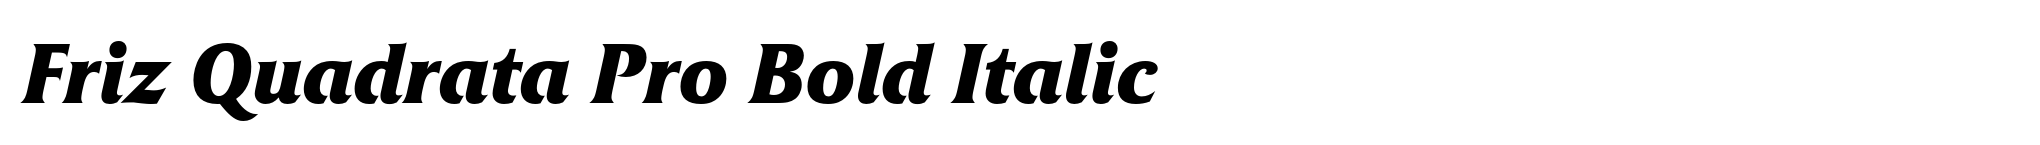 Friz Quadrata Pro Bold Italic image